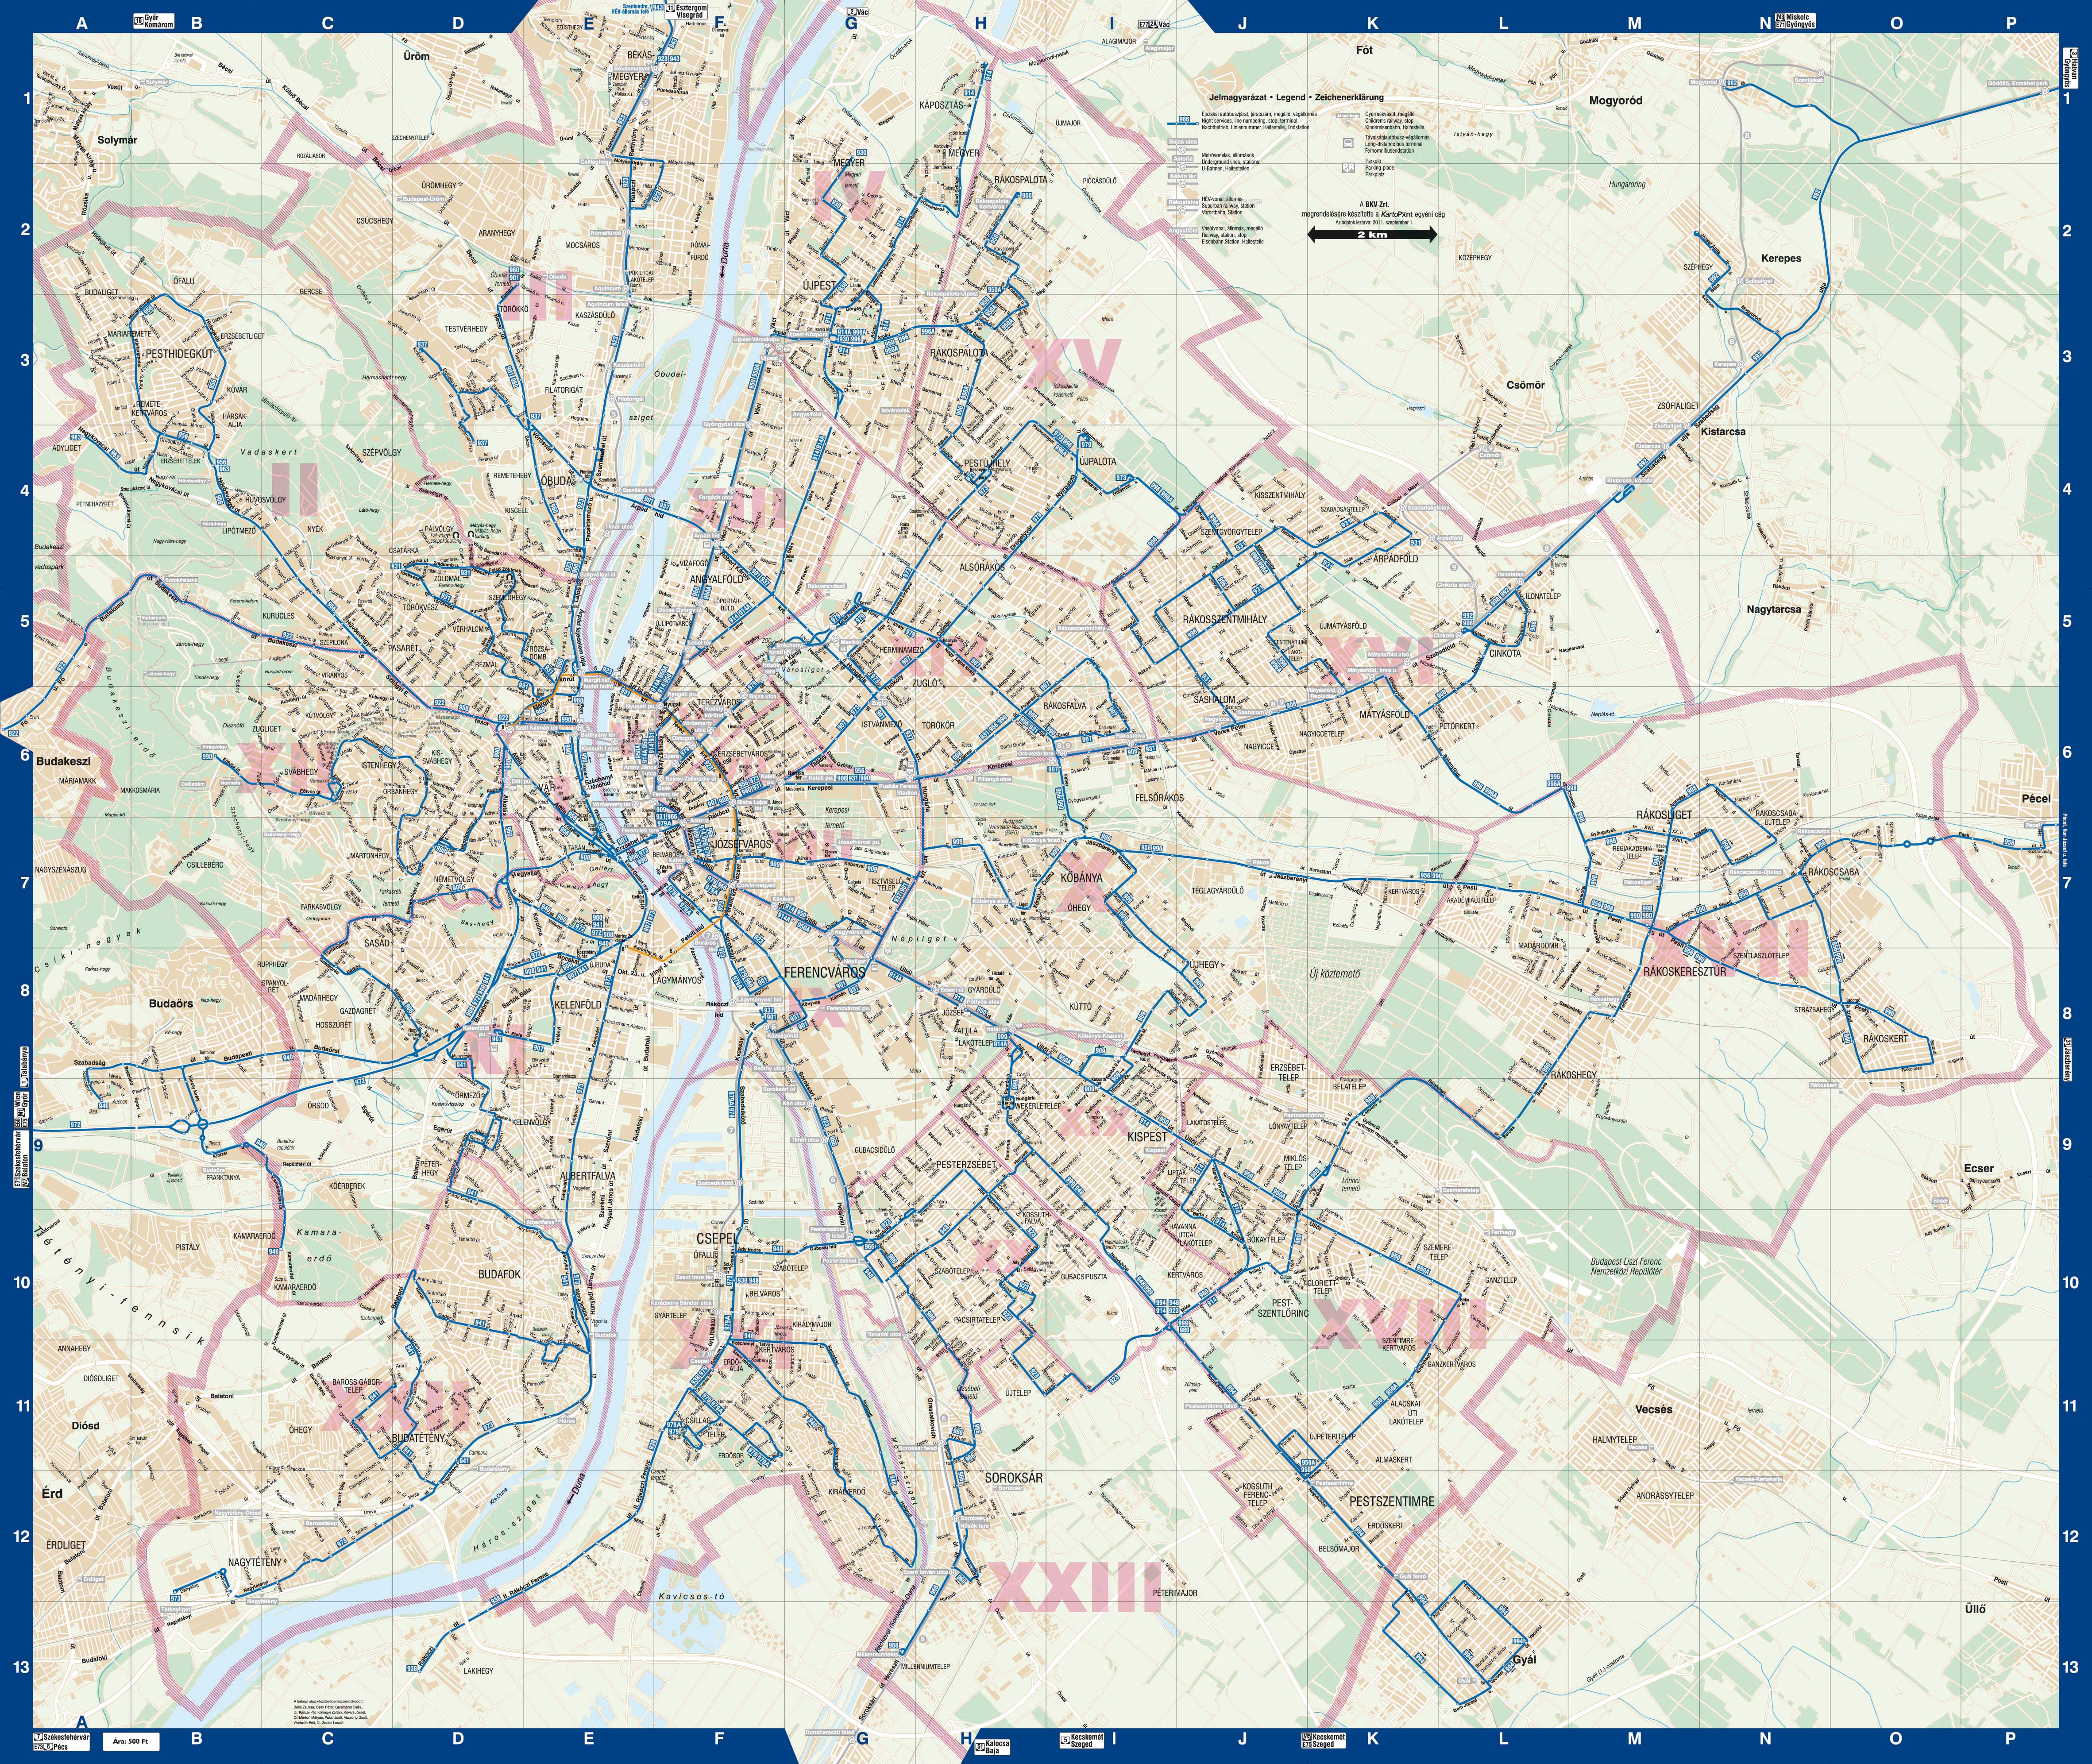 budapest térkép bkv járatok Budapest night transport map budapest térkép bkv járatok